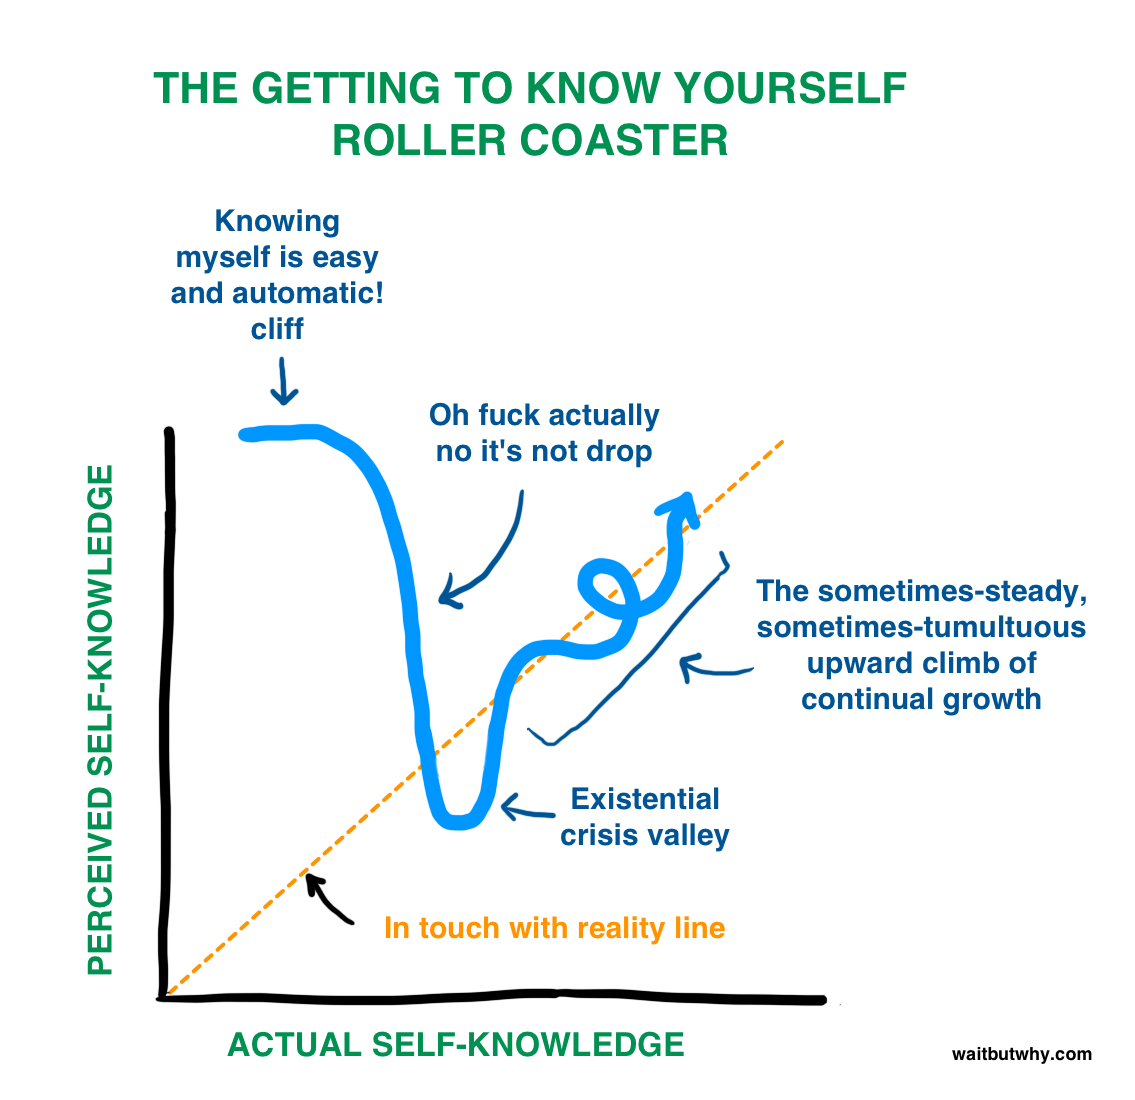 Die Achterbahn der Selbstreflexion: Eine aufregende Reise, um sich selbst besser zu verstehen